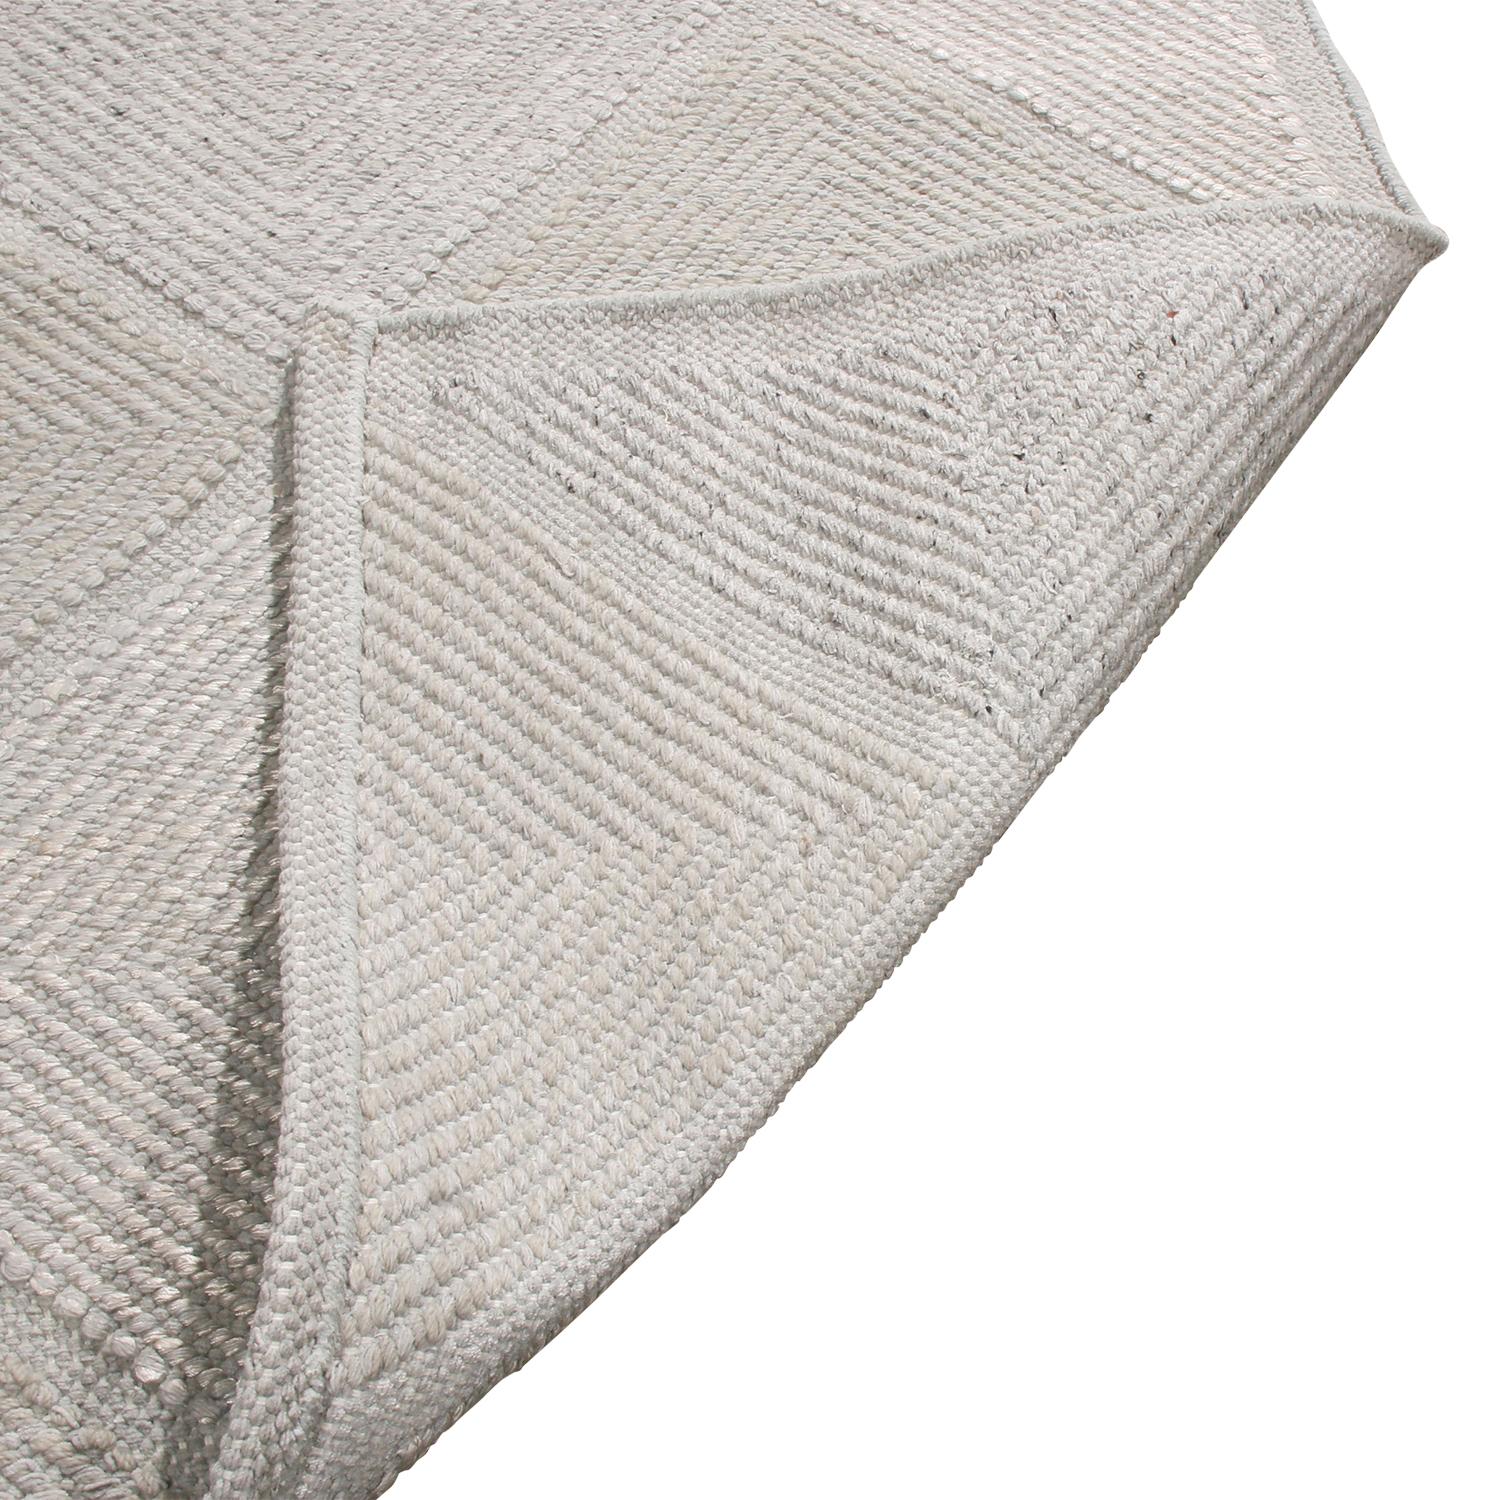 Rug & Kilim's skandinavisch inspirierter, natürlicher Polyester-Teppich im marokkanischen Stil (Handgeknüpft) im Angebot